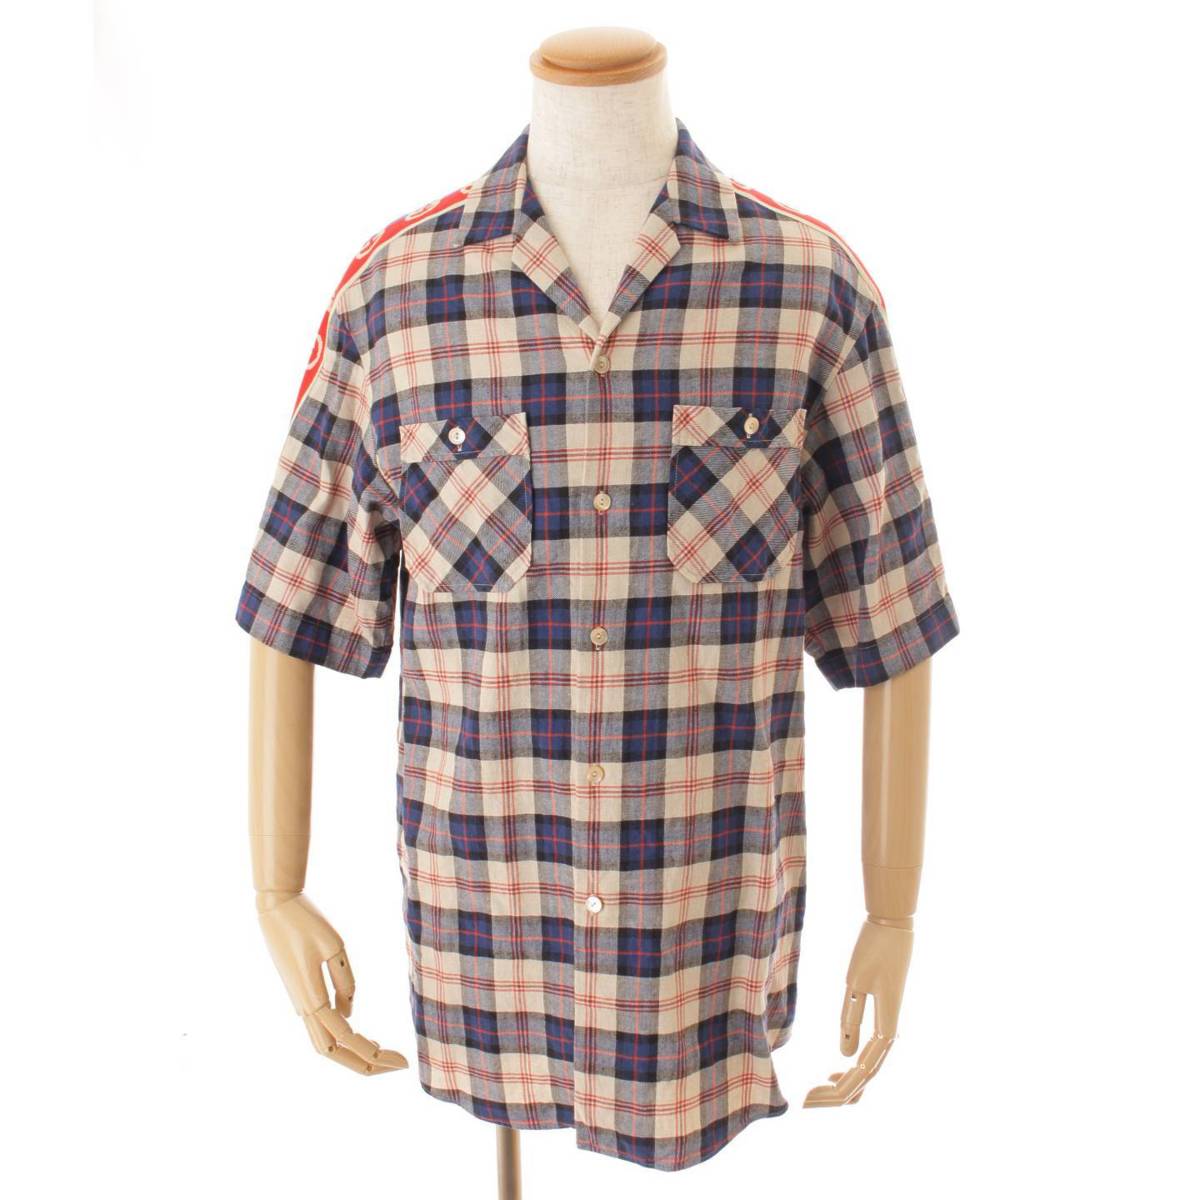 グッチ(Gucci) メンズ 20年 TAPED LOGO チェック柄 ボーリングシャツ 半袖シャツ 619025 マルチ 44